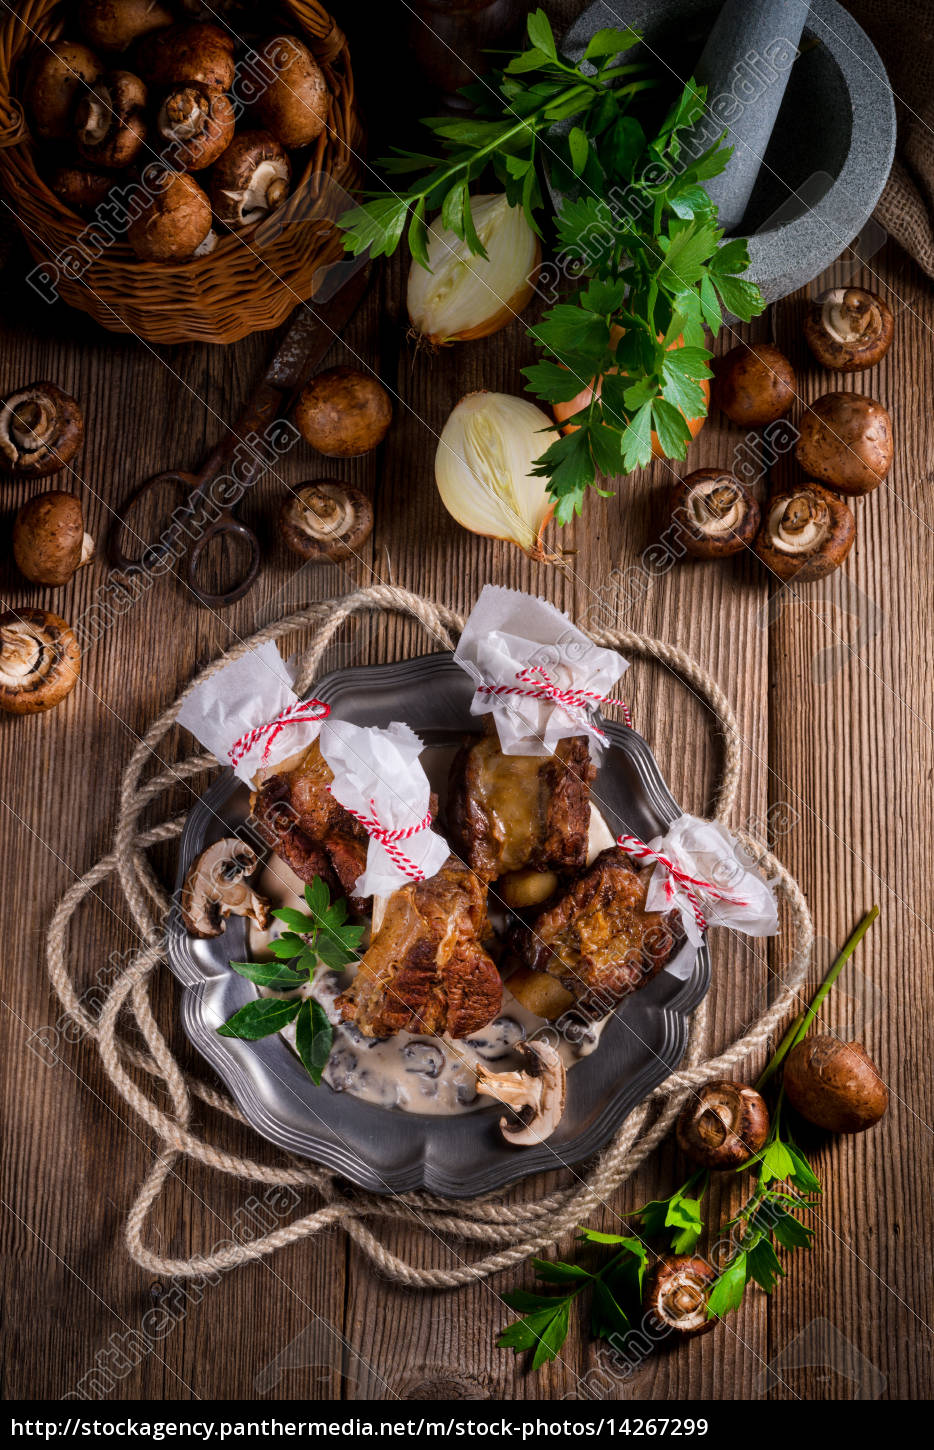 Grilled rinderrippchen with mushroom sauce - Lizenzfreies Bild ...